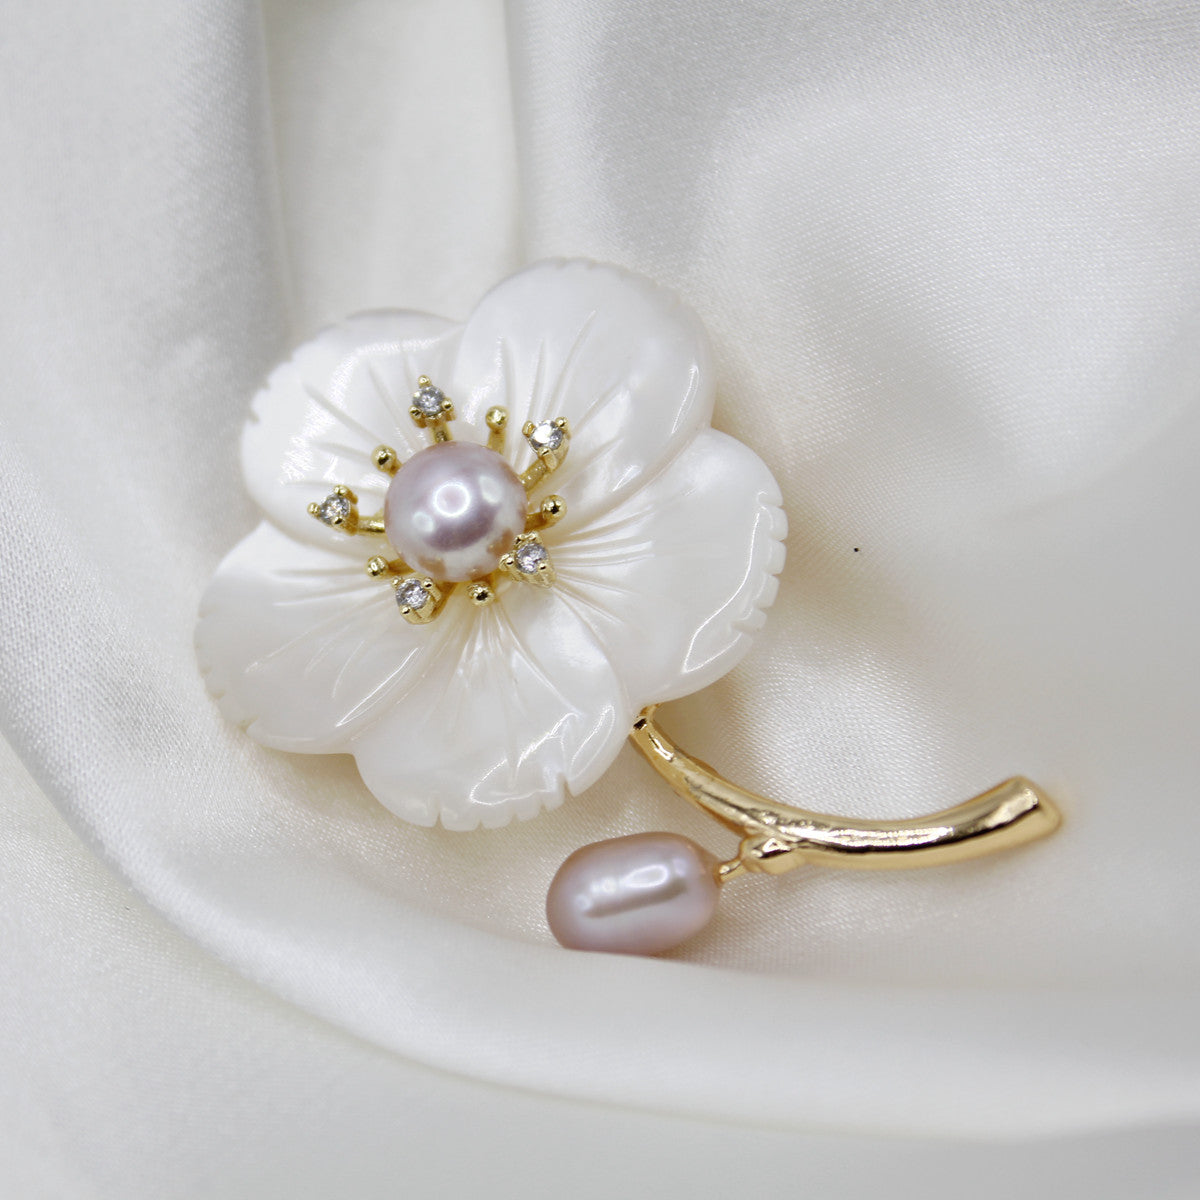 Natural Freshwater Pearls Brooch| 14k Gold Flowers| Elegant, Versatile Accessories